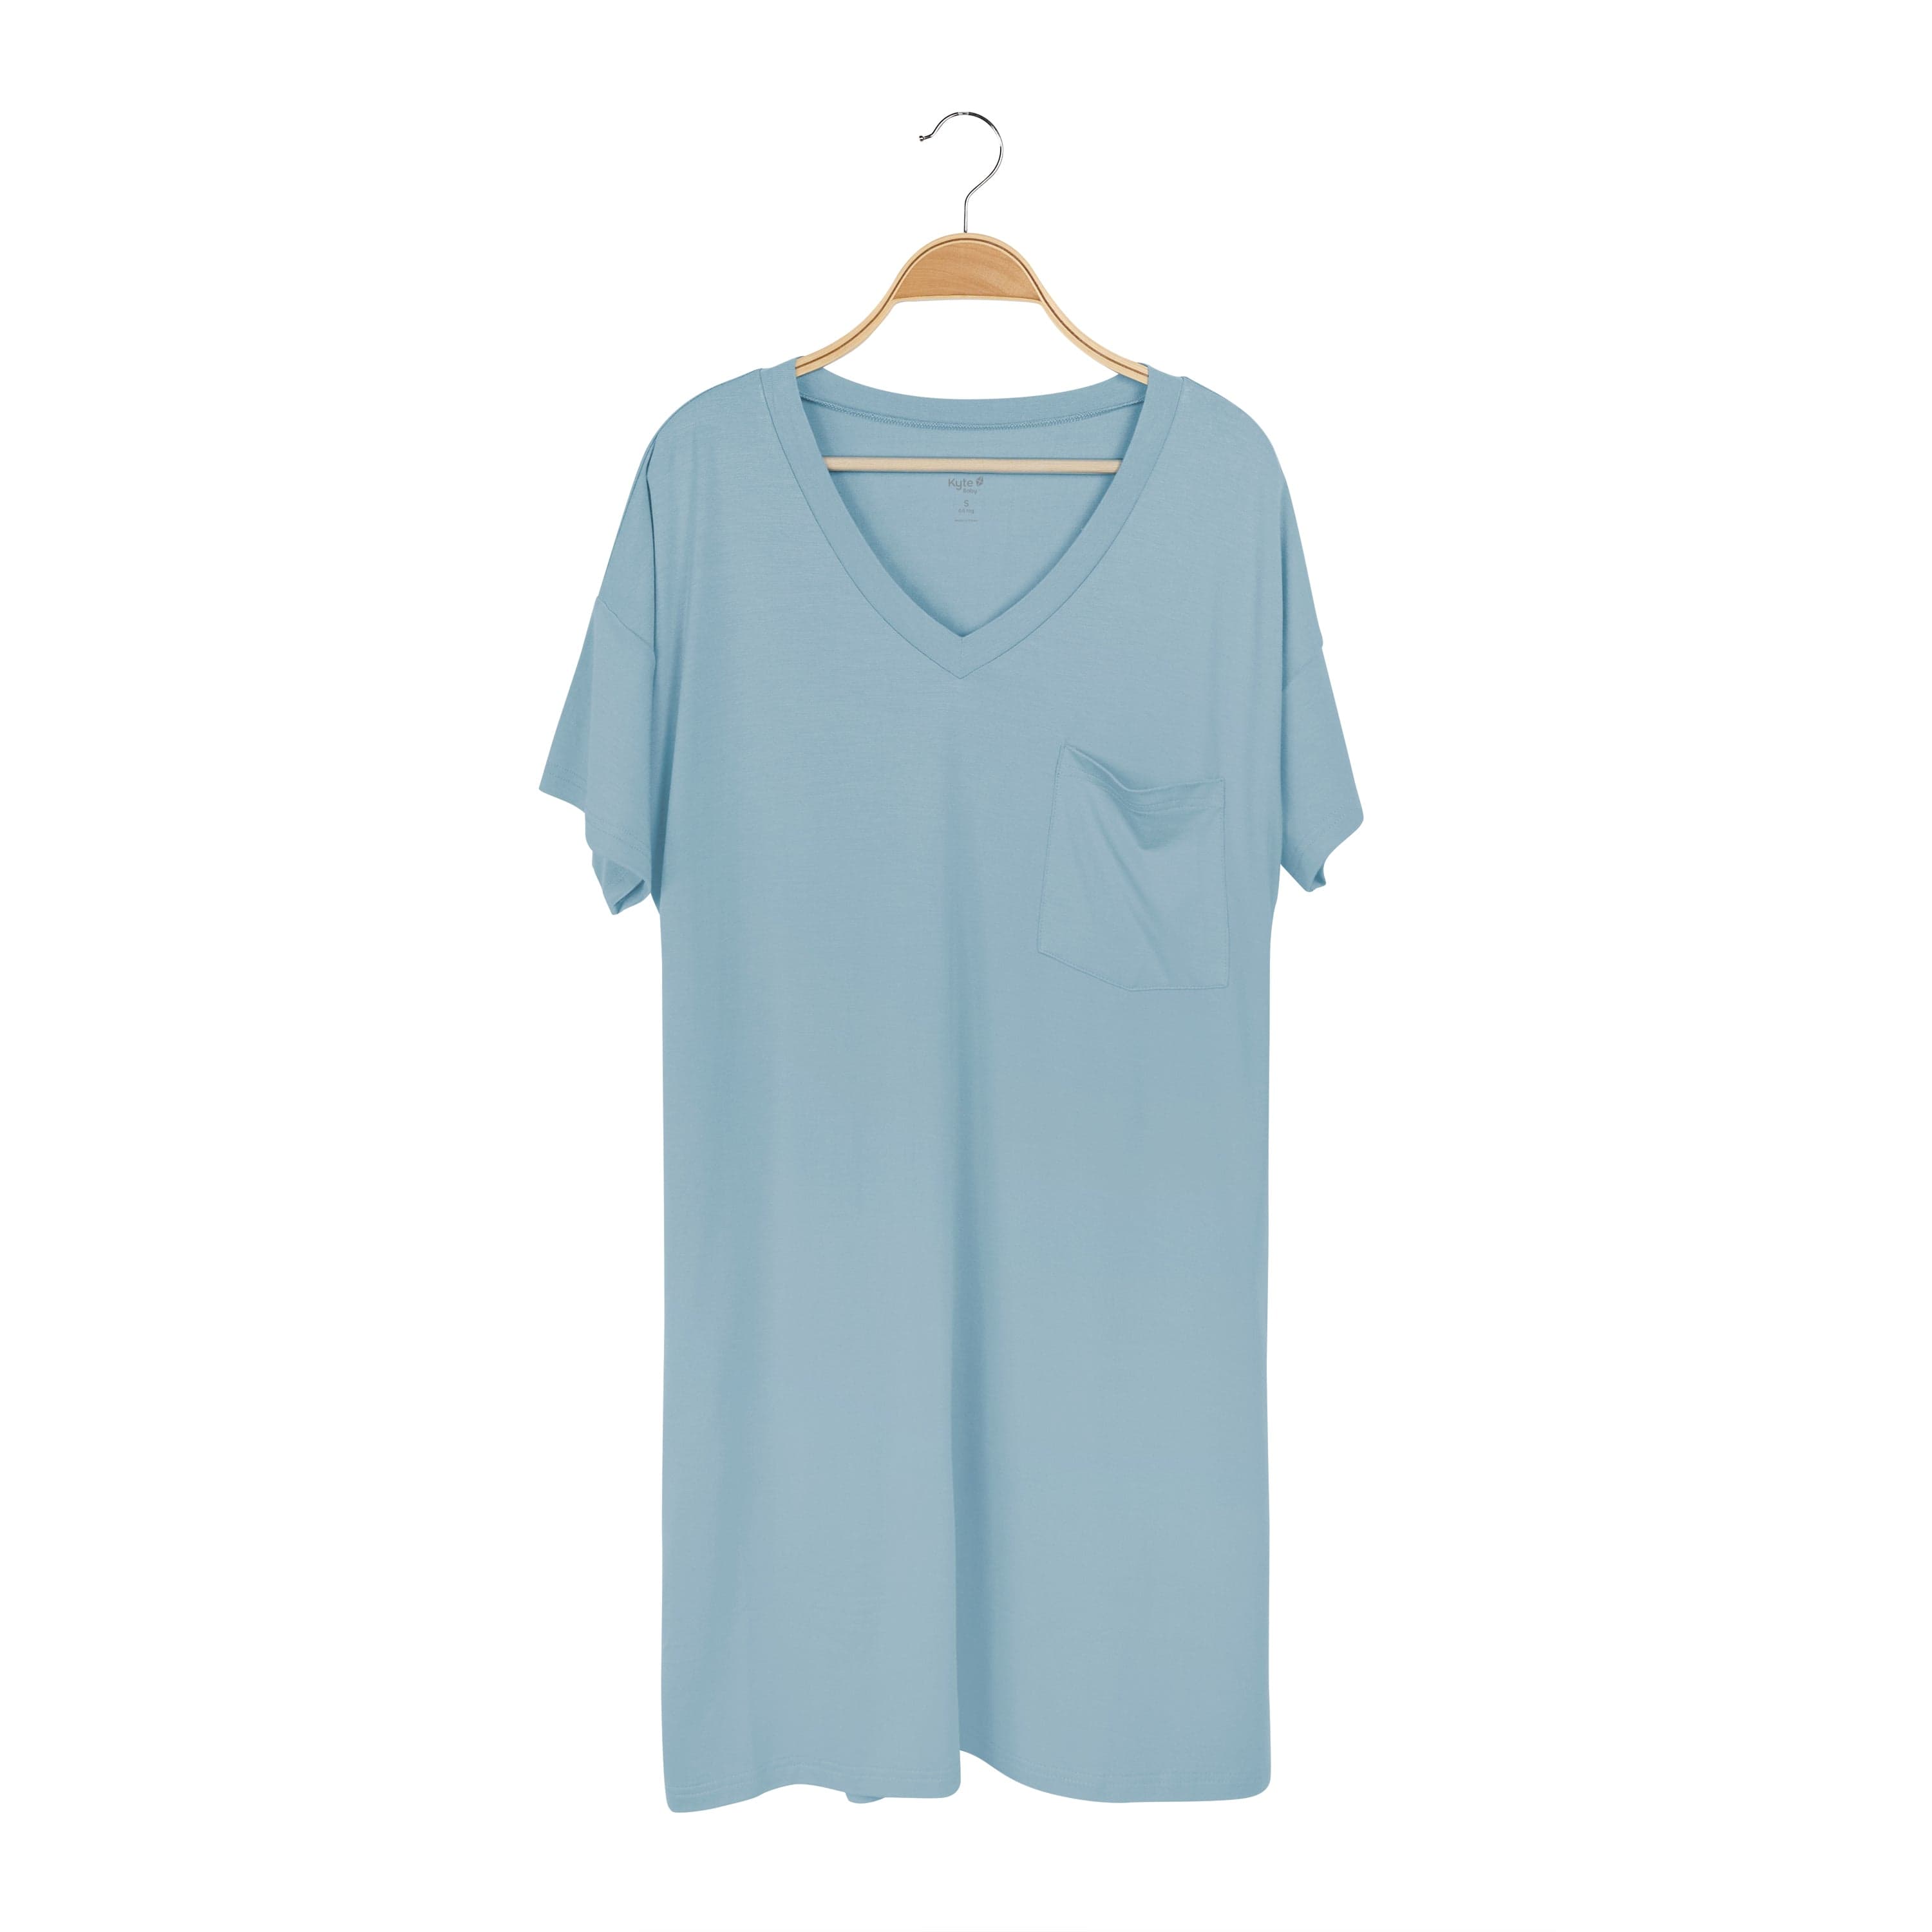 Kyte Baby Adult T-Shirt Dress Women's T-Shirt Dress in Dusty Blue